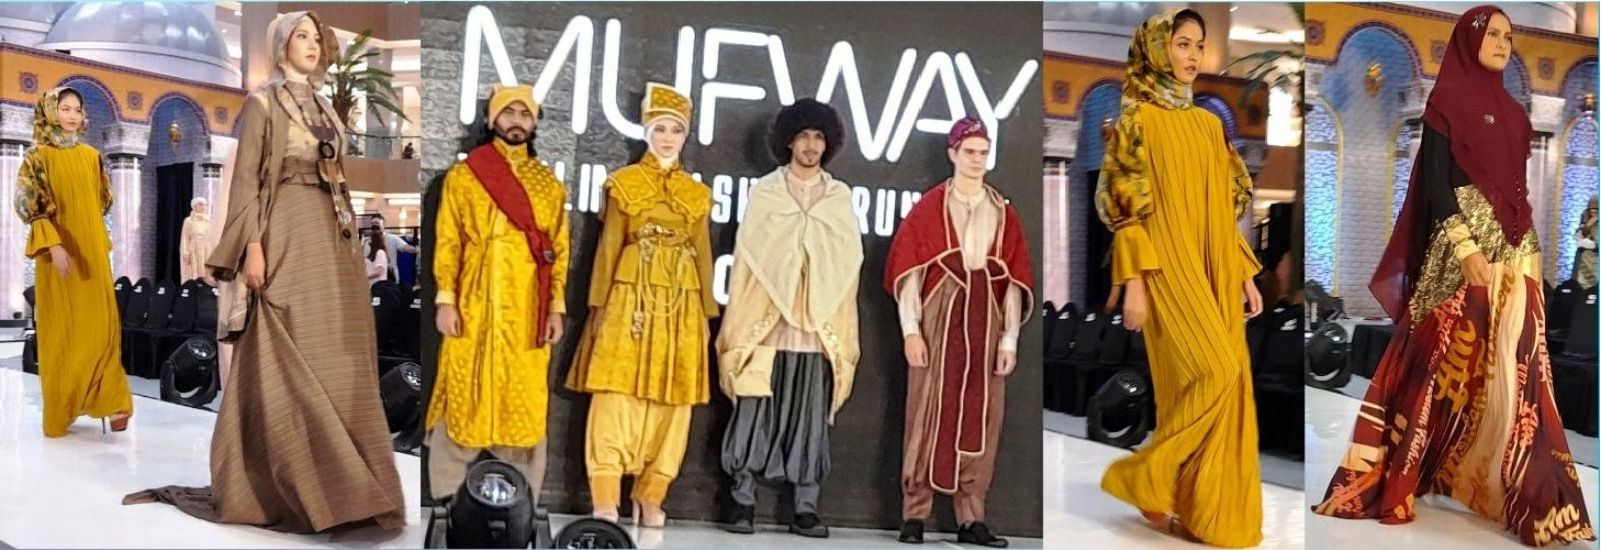 Muslim Fashion Berkembang Pesat, Indonesia Pasar Terbesar Ketiga di Dunia